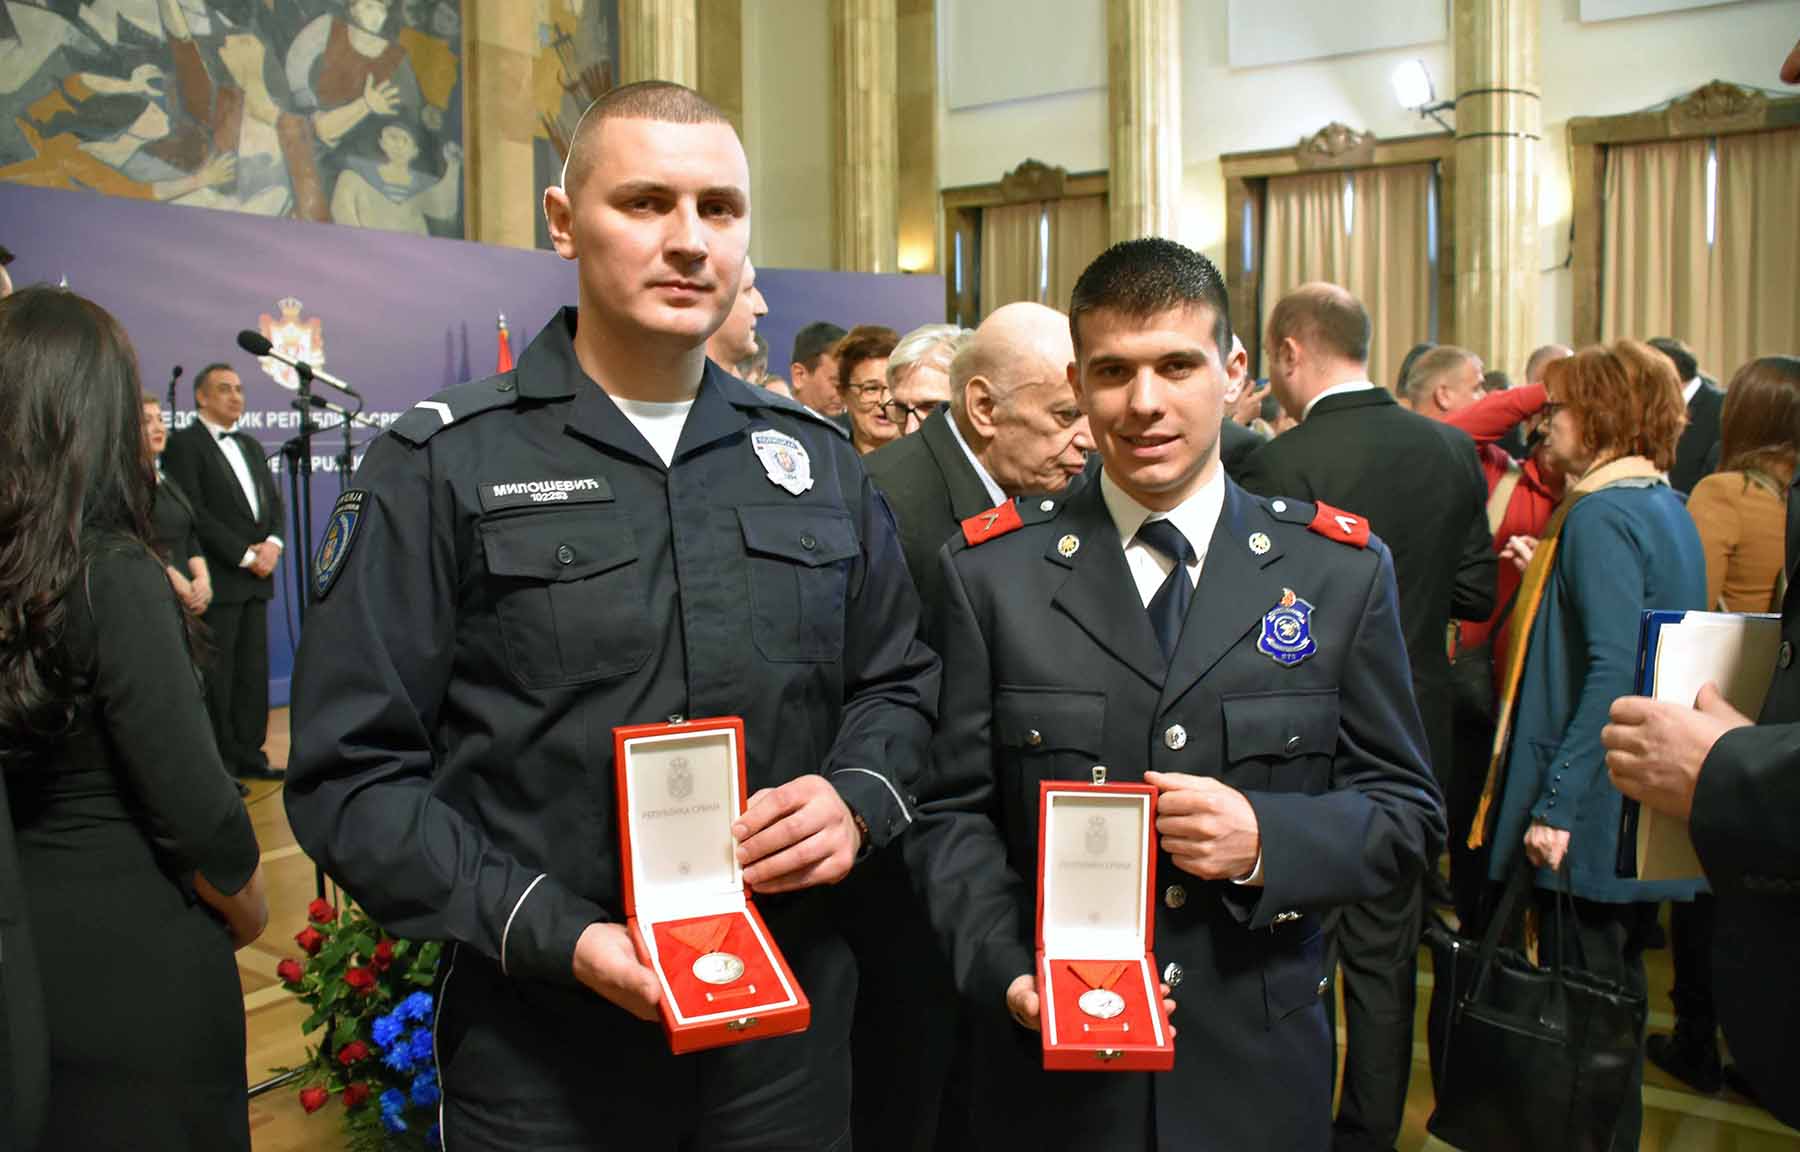 Srebrne medalje za hrabrost „Miloš Obilić“ uručene su policijskom službeniku Policijske uprave Niš Milošu Miloševiću i pripadniku Vatrogasno-spasilačke jedinice u Jagodini Nemanji Radosavljeviću.